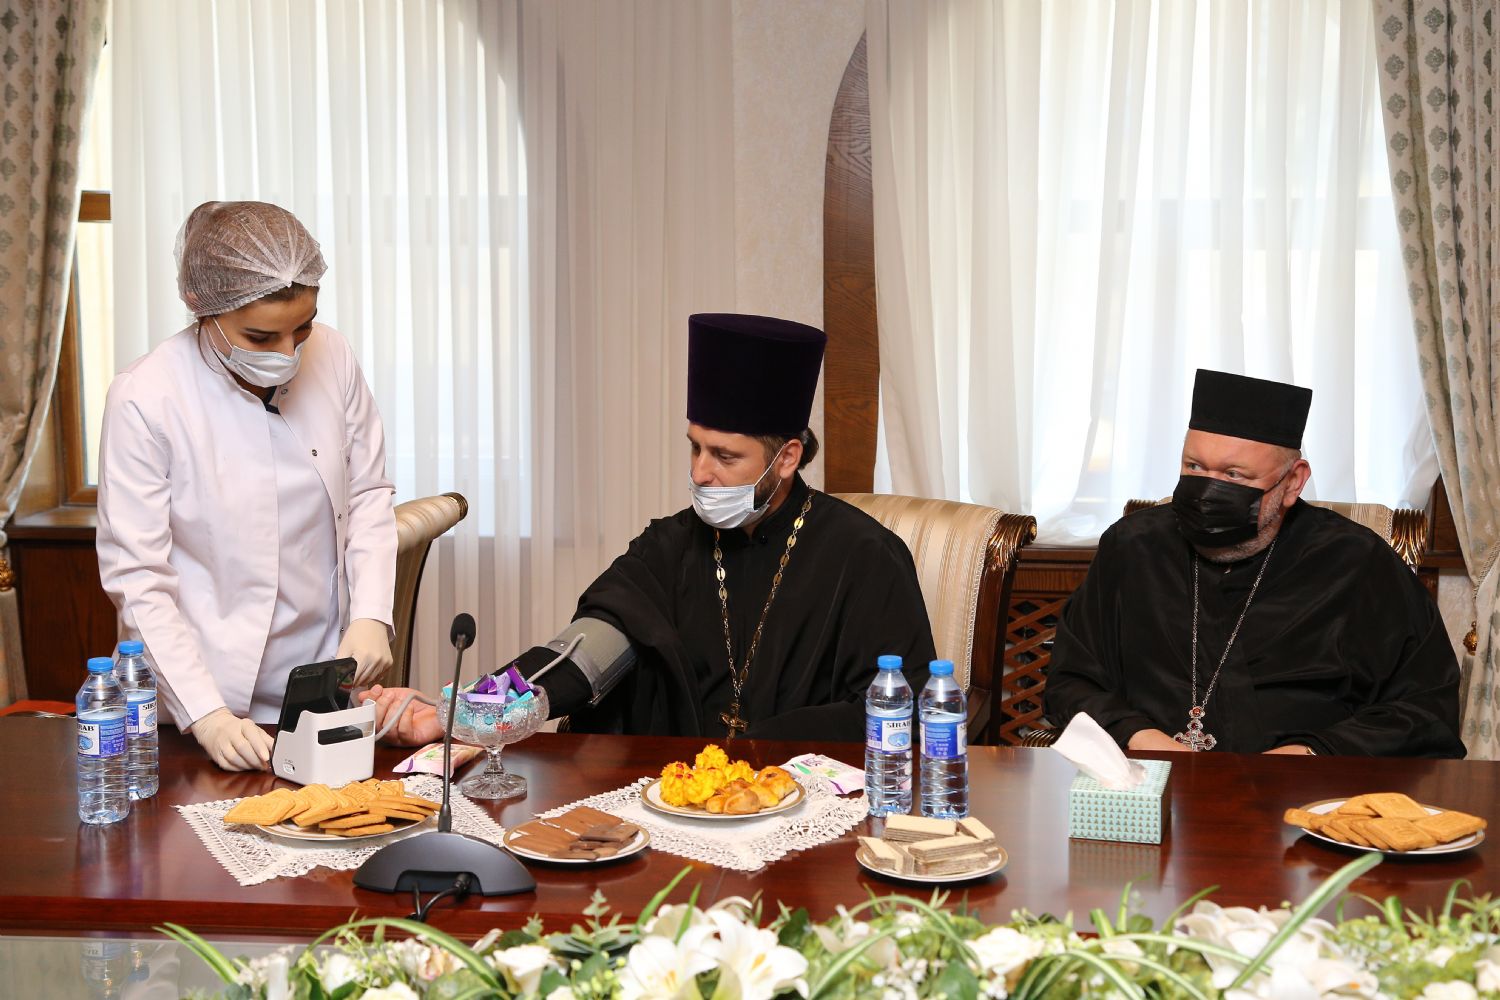 Представители Бакинской и Азербайджанской епархии приняли участие в благотворительной акции – сдаче крови для детей больных талассемией.